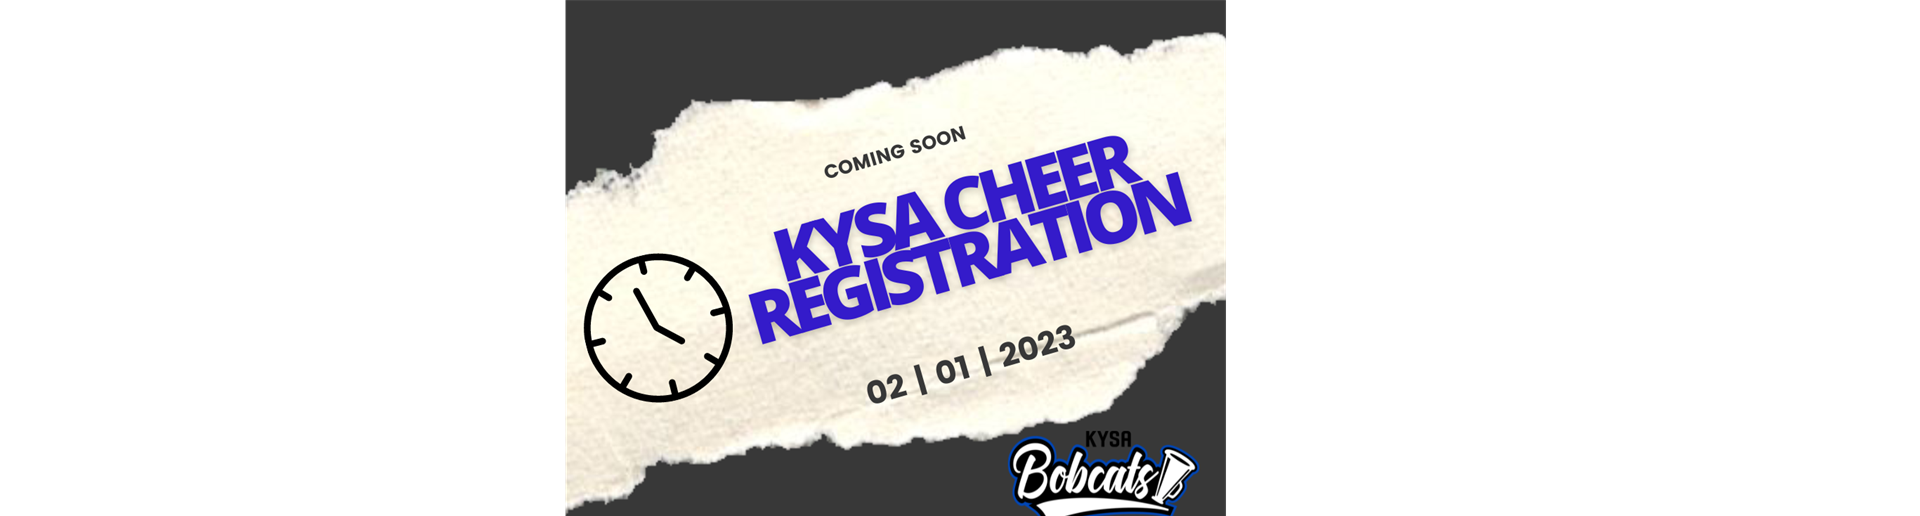 2023 KYSA CHEER Registration 